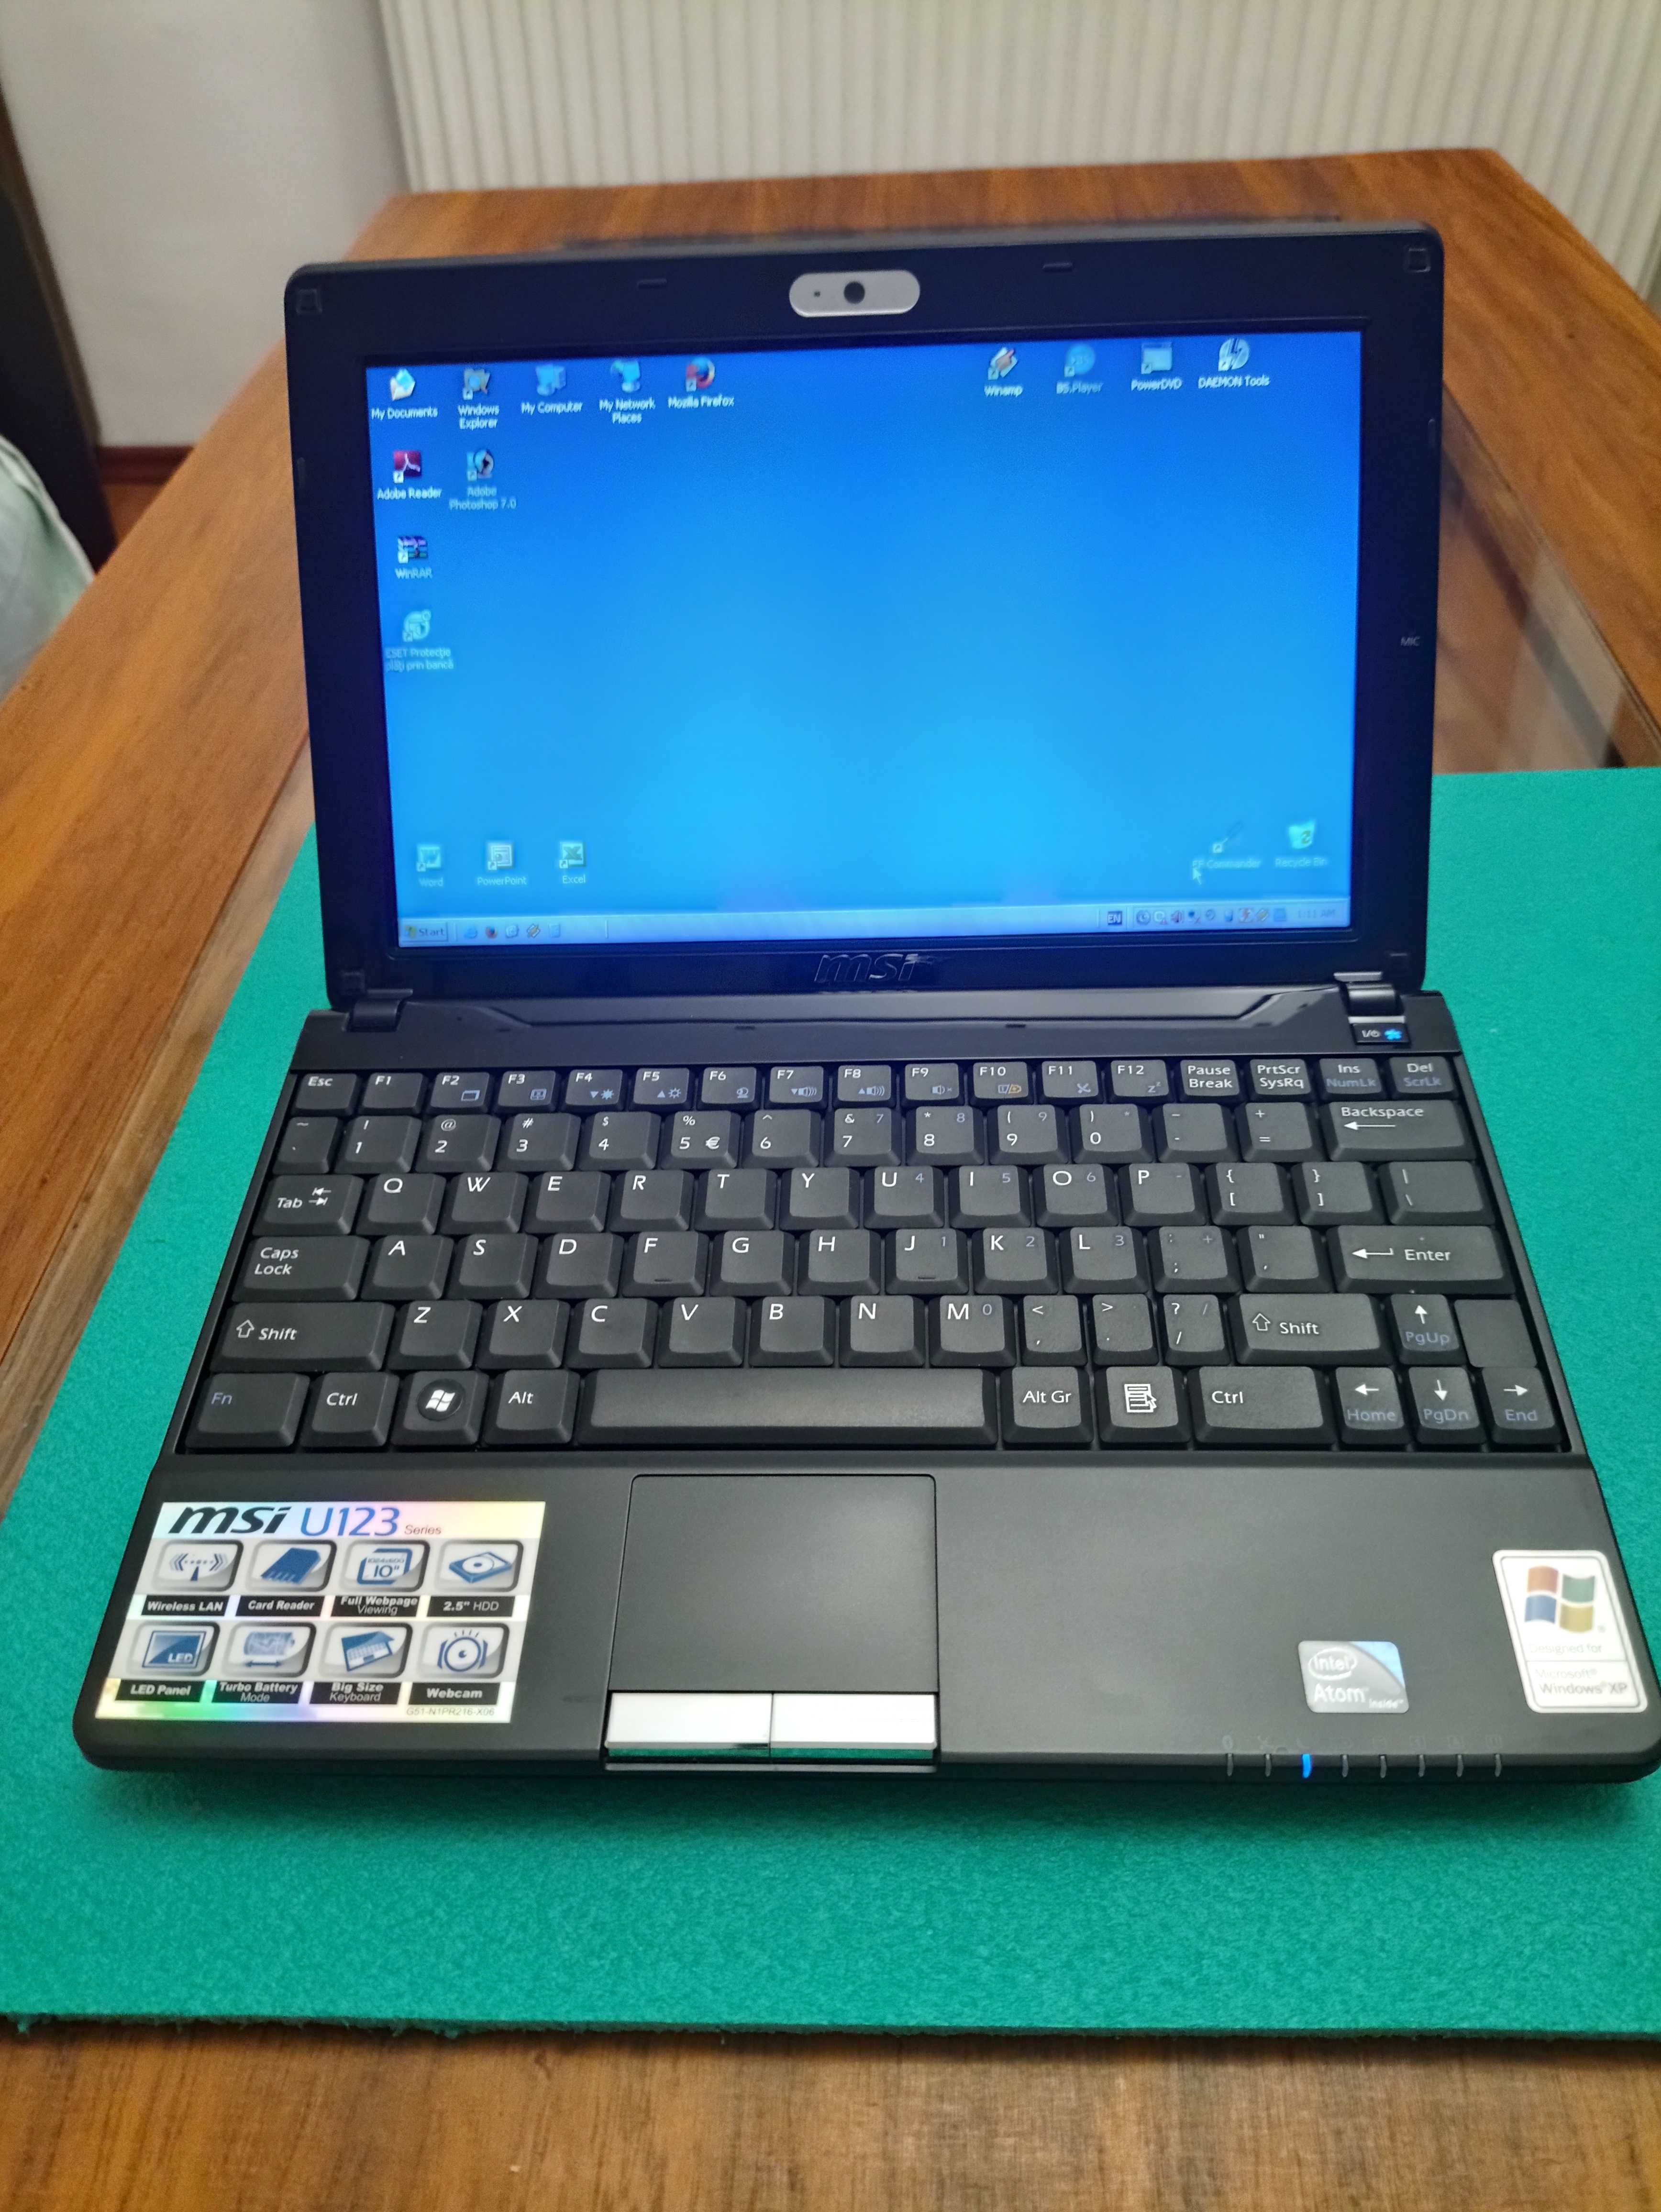 Notebook MSI U123 10”, Intel Atom N280 1.66GHz, 1GB RAM, 160GB HDD